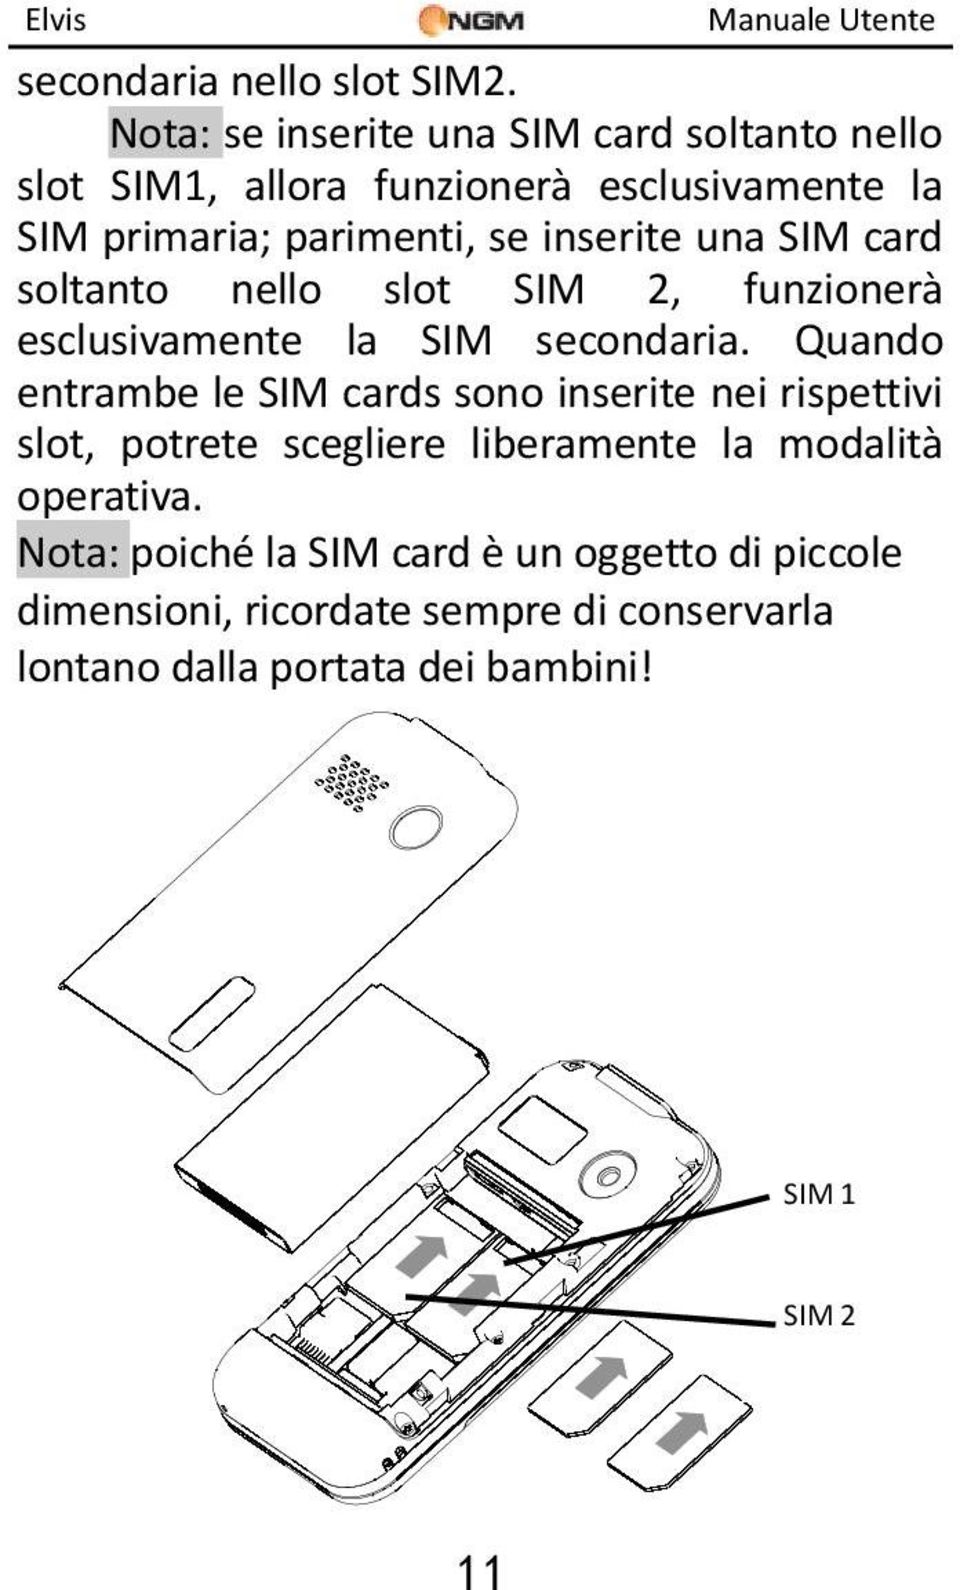 inserite una SIM card soltanto nello slot SIM 2, funzionerà esclusivamente la SIM secondaria.